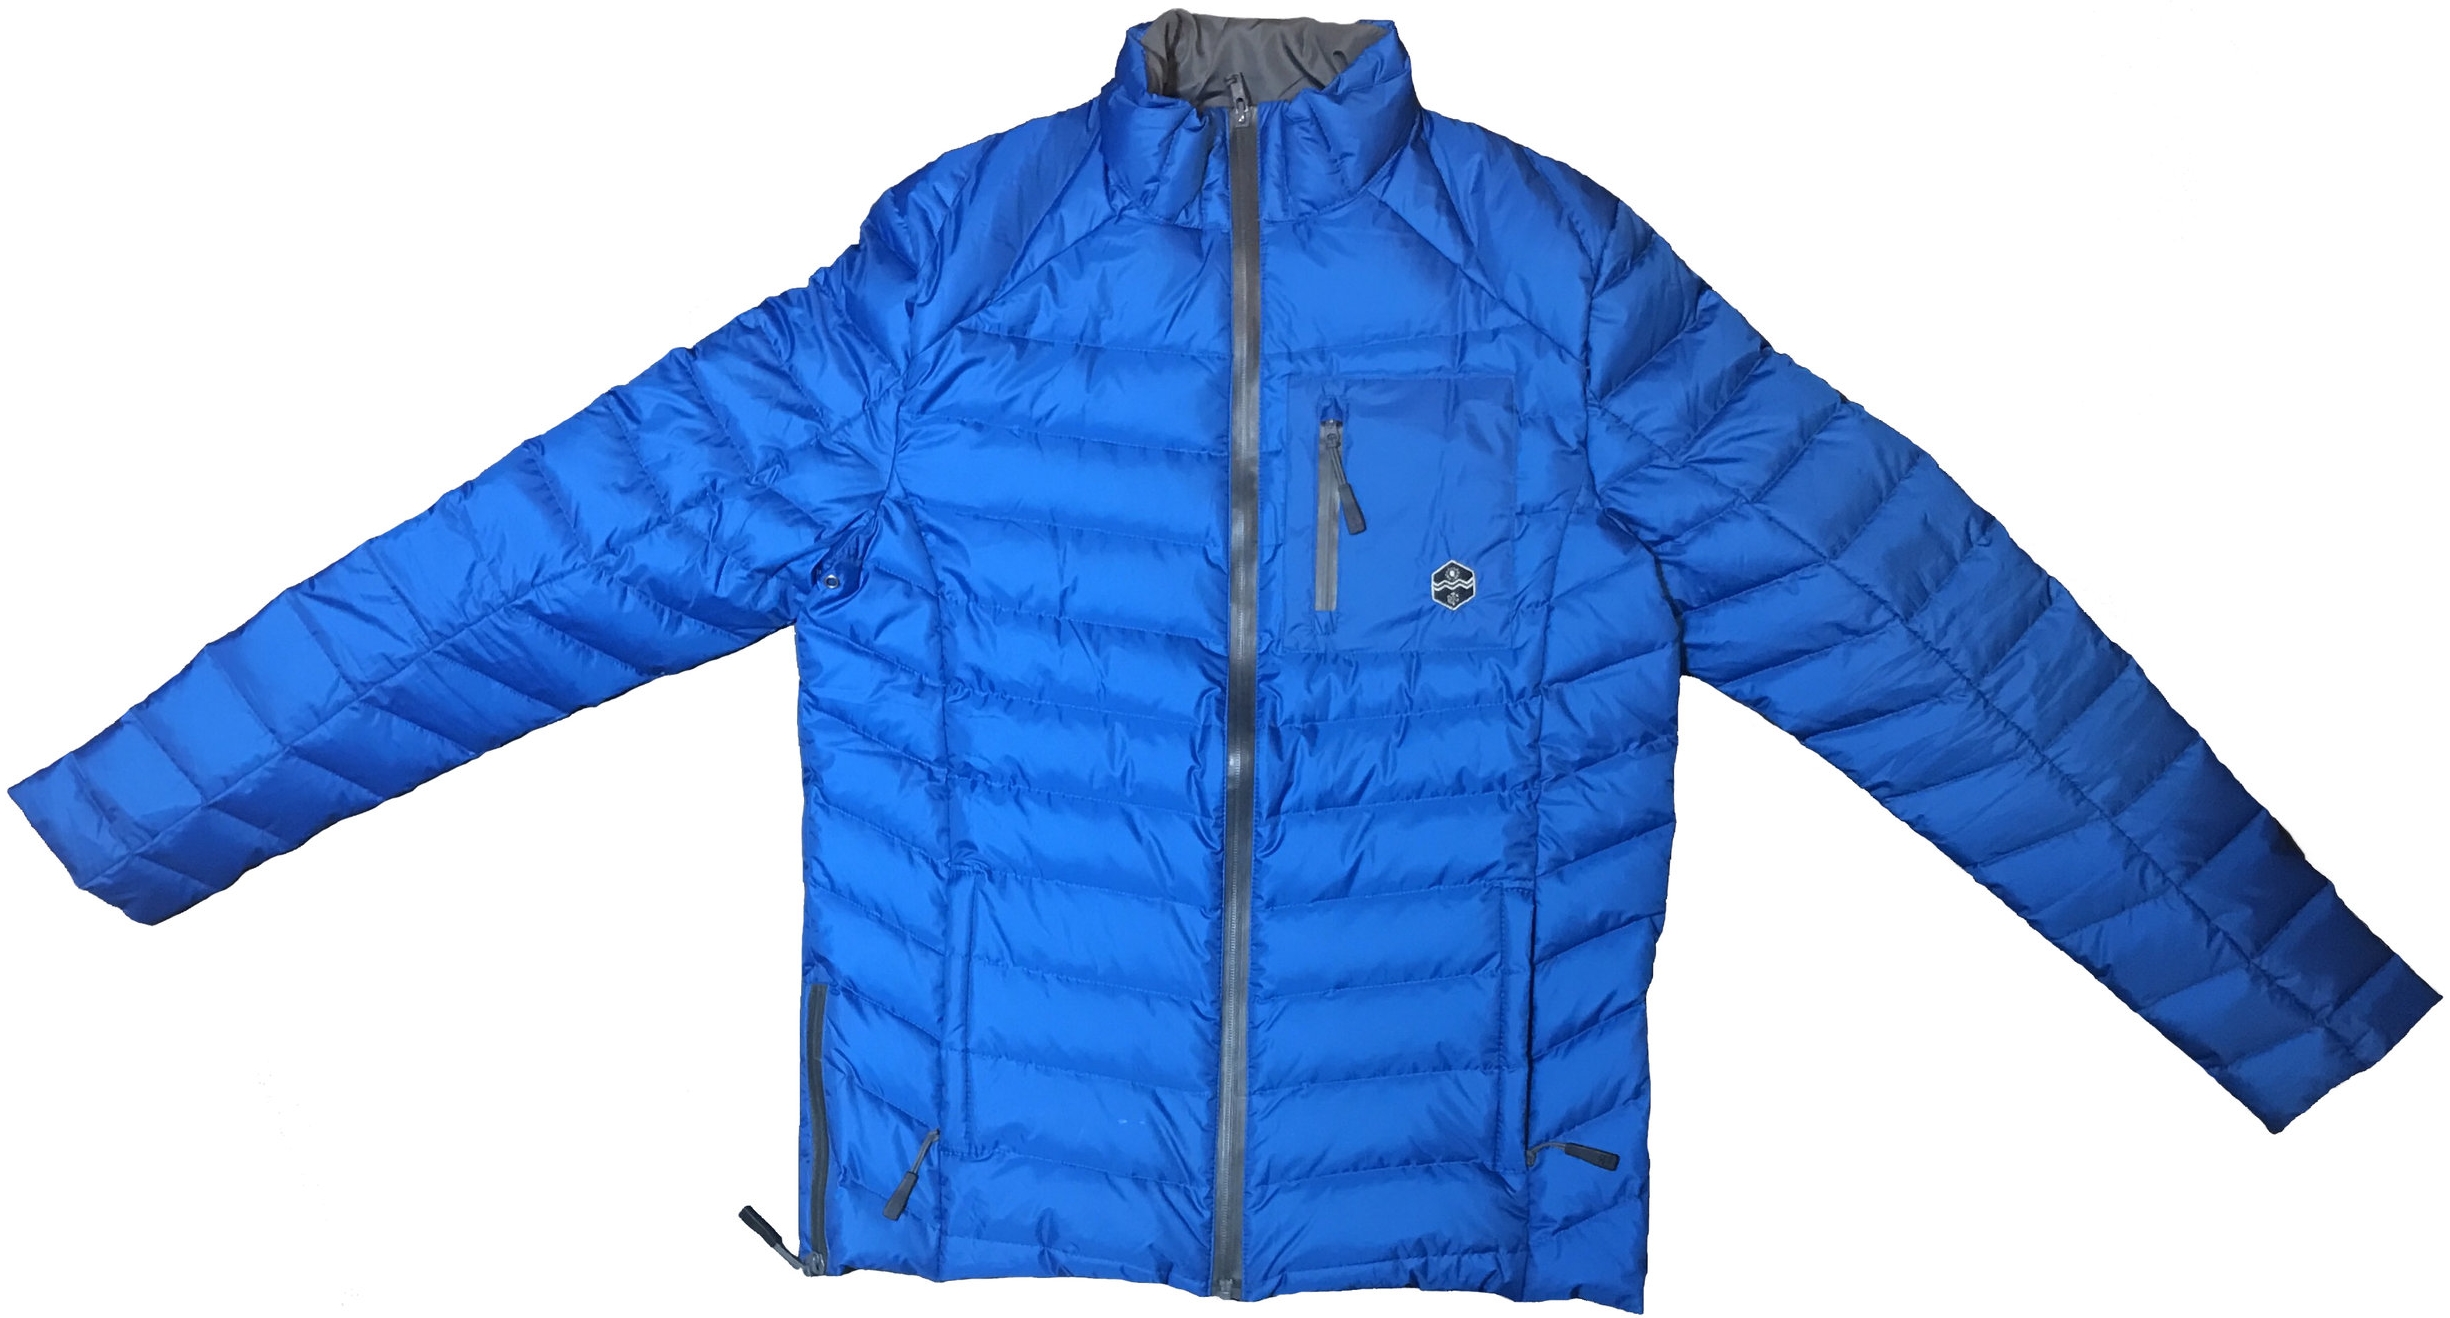 Khombu Lightweight Puffer Jacket, $125.99